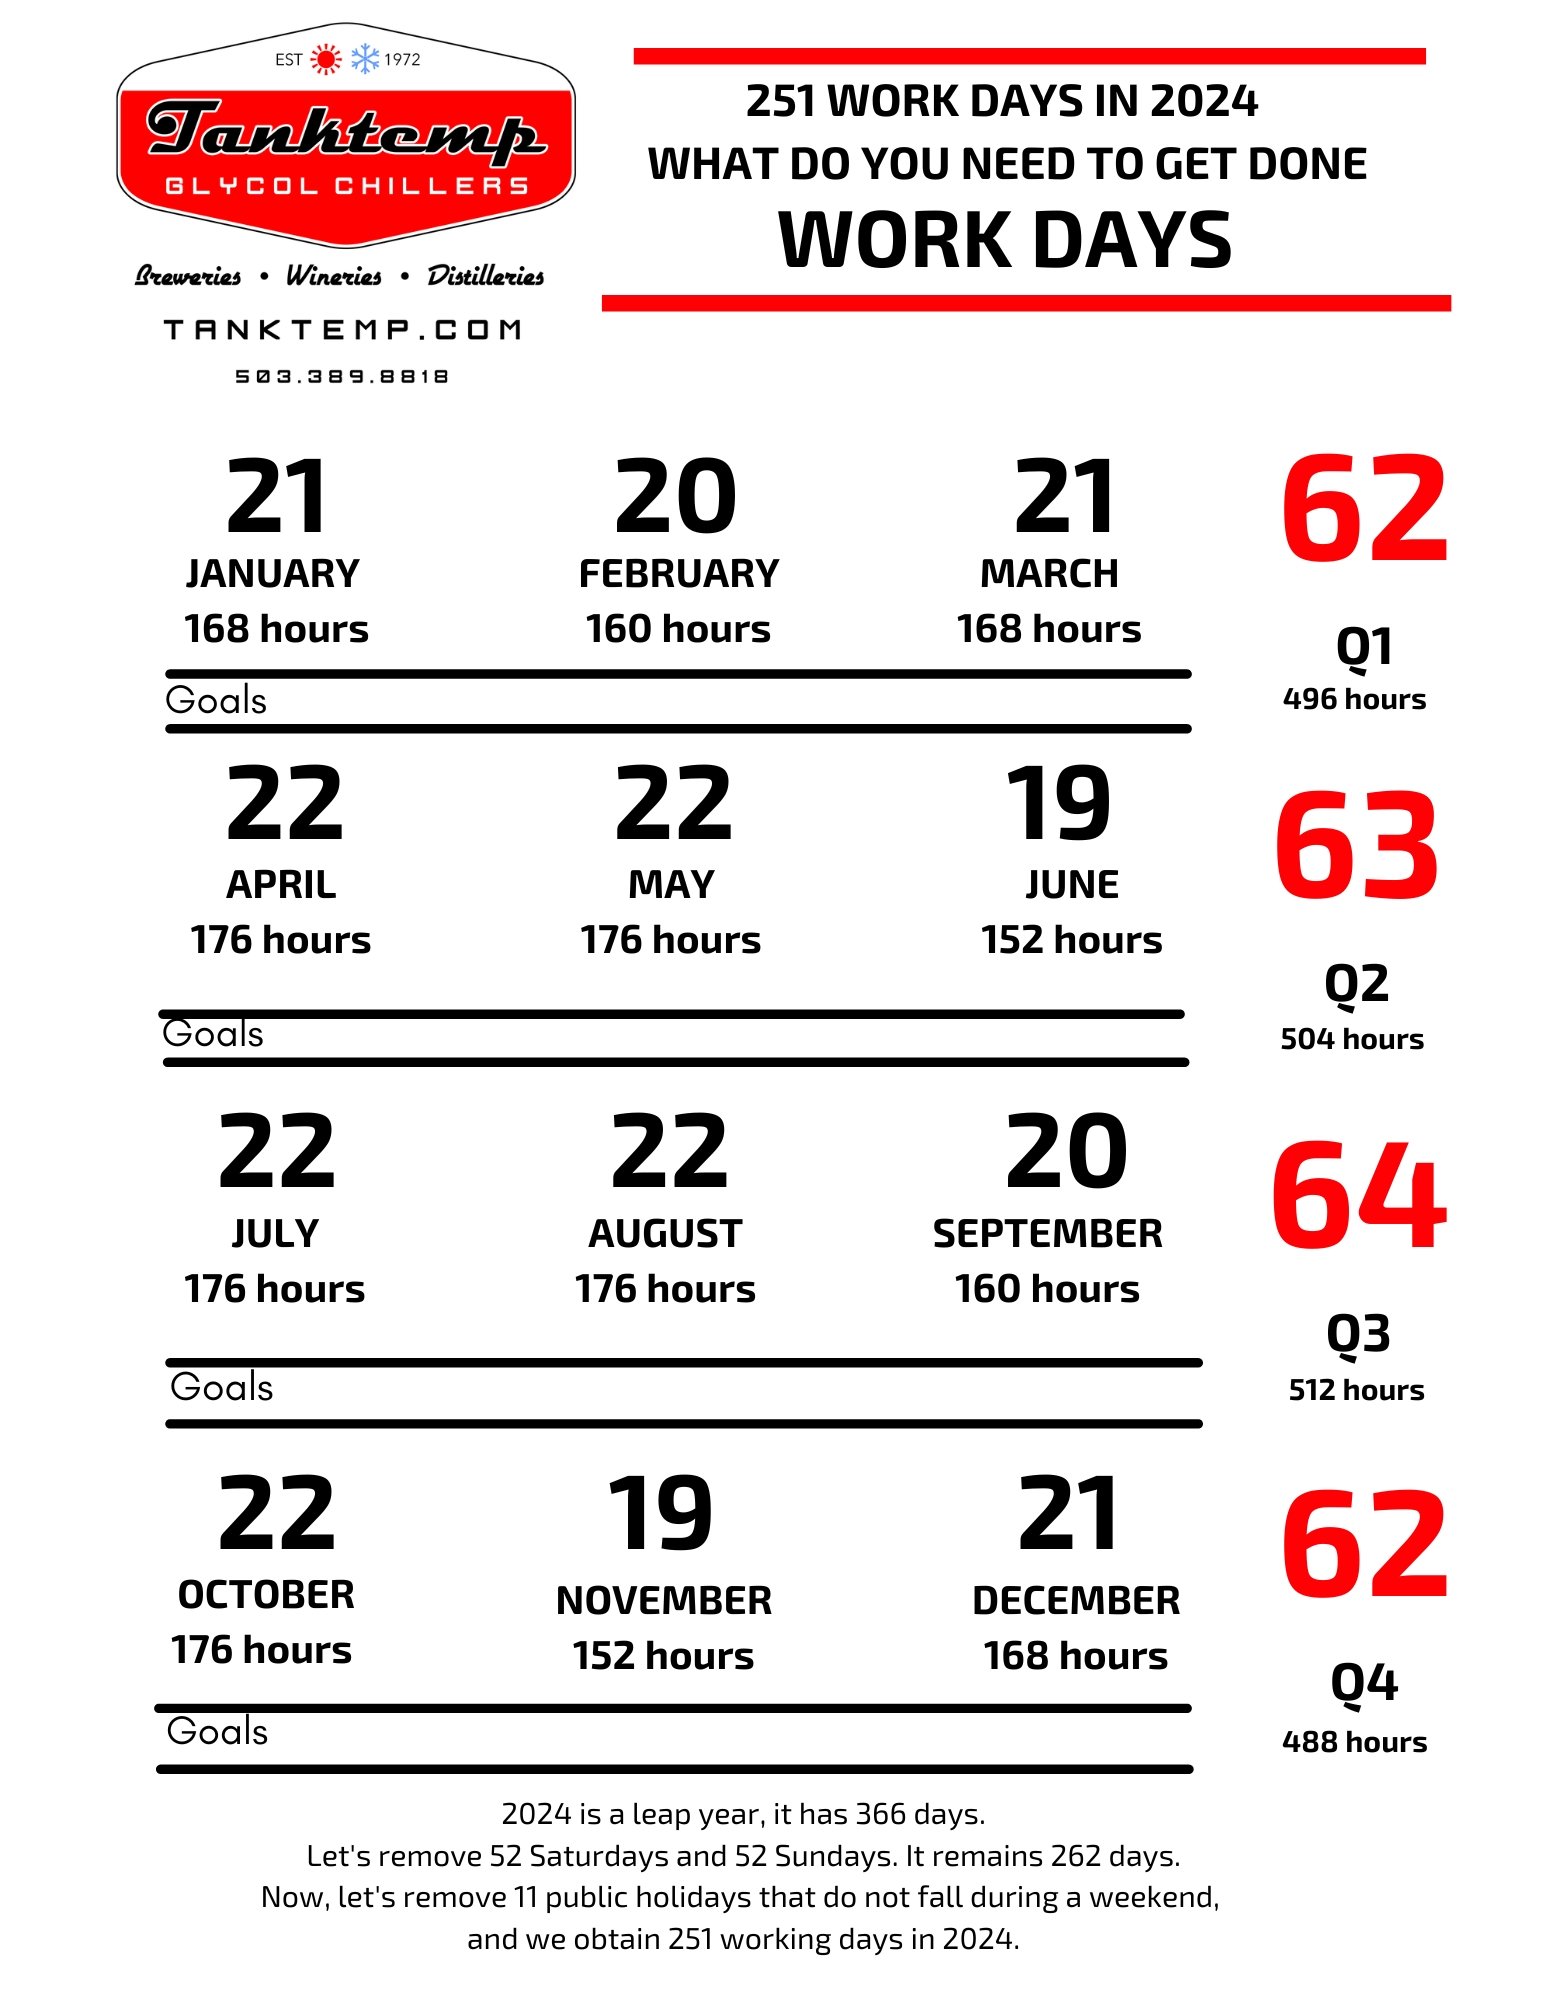 Total Work Days In 2024 Verna Alejandra